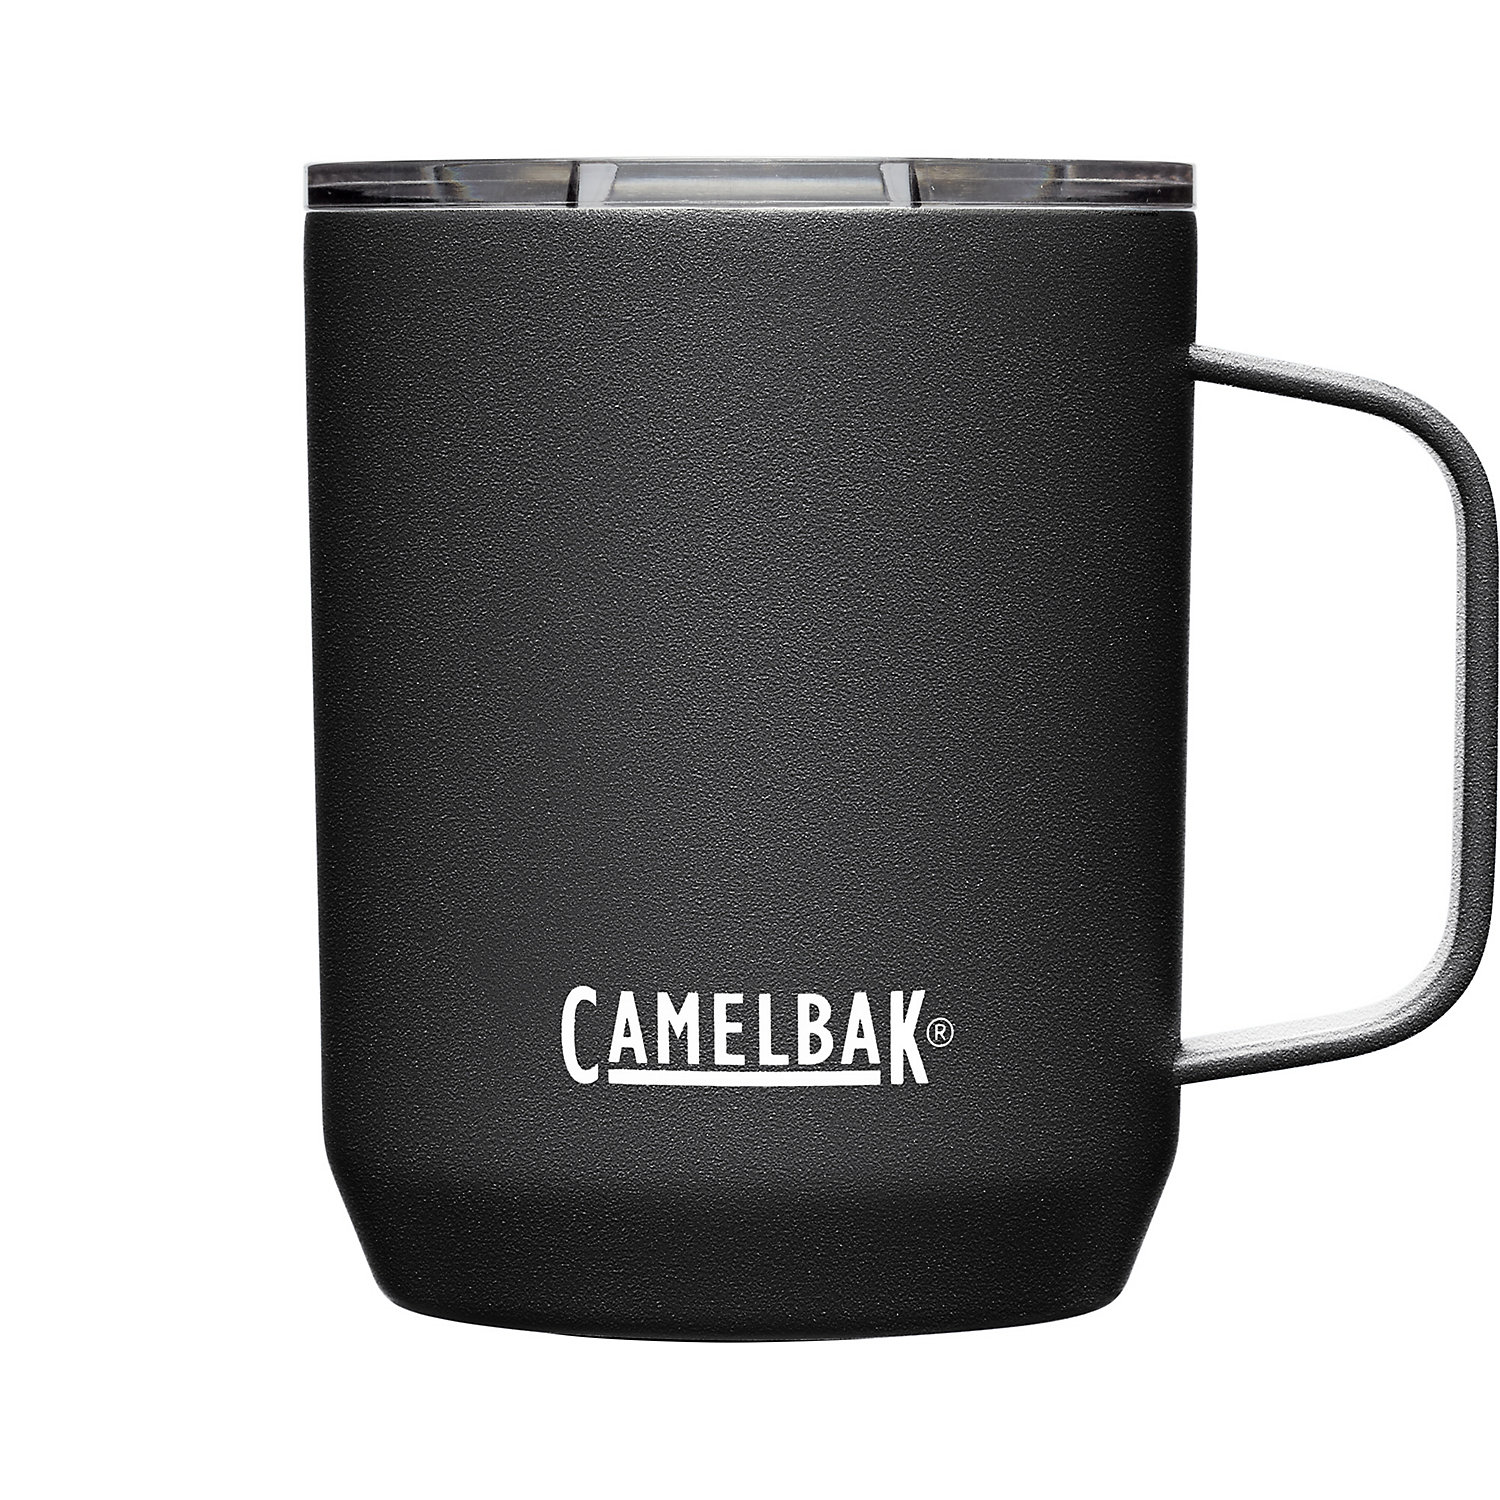 Camelbak SST Vacuum Insulated 12oz Camp Mug